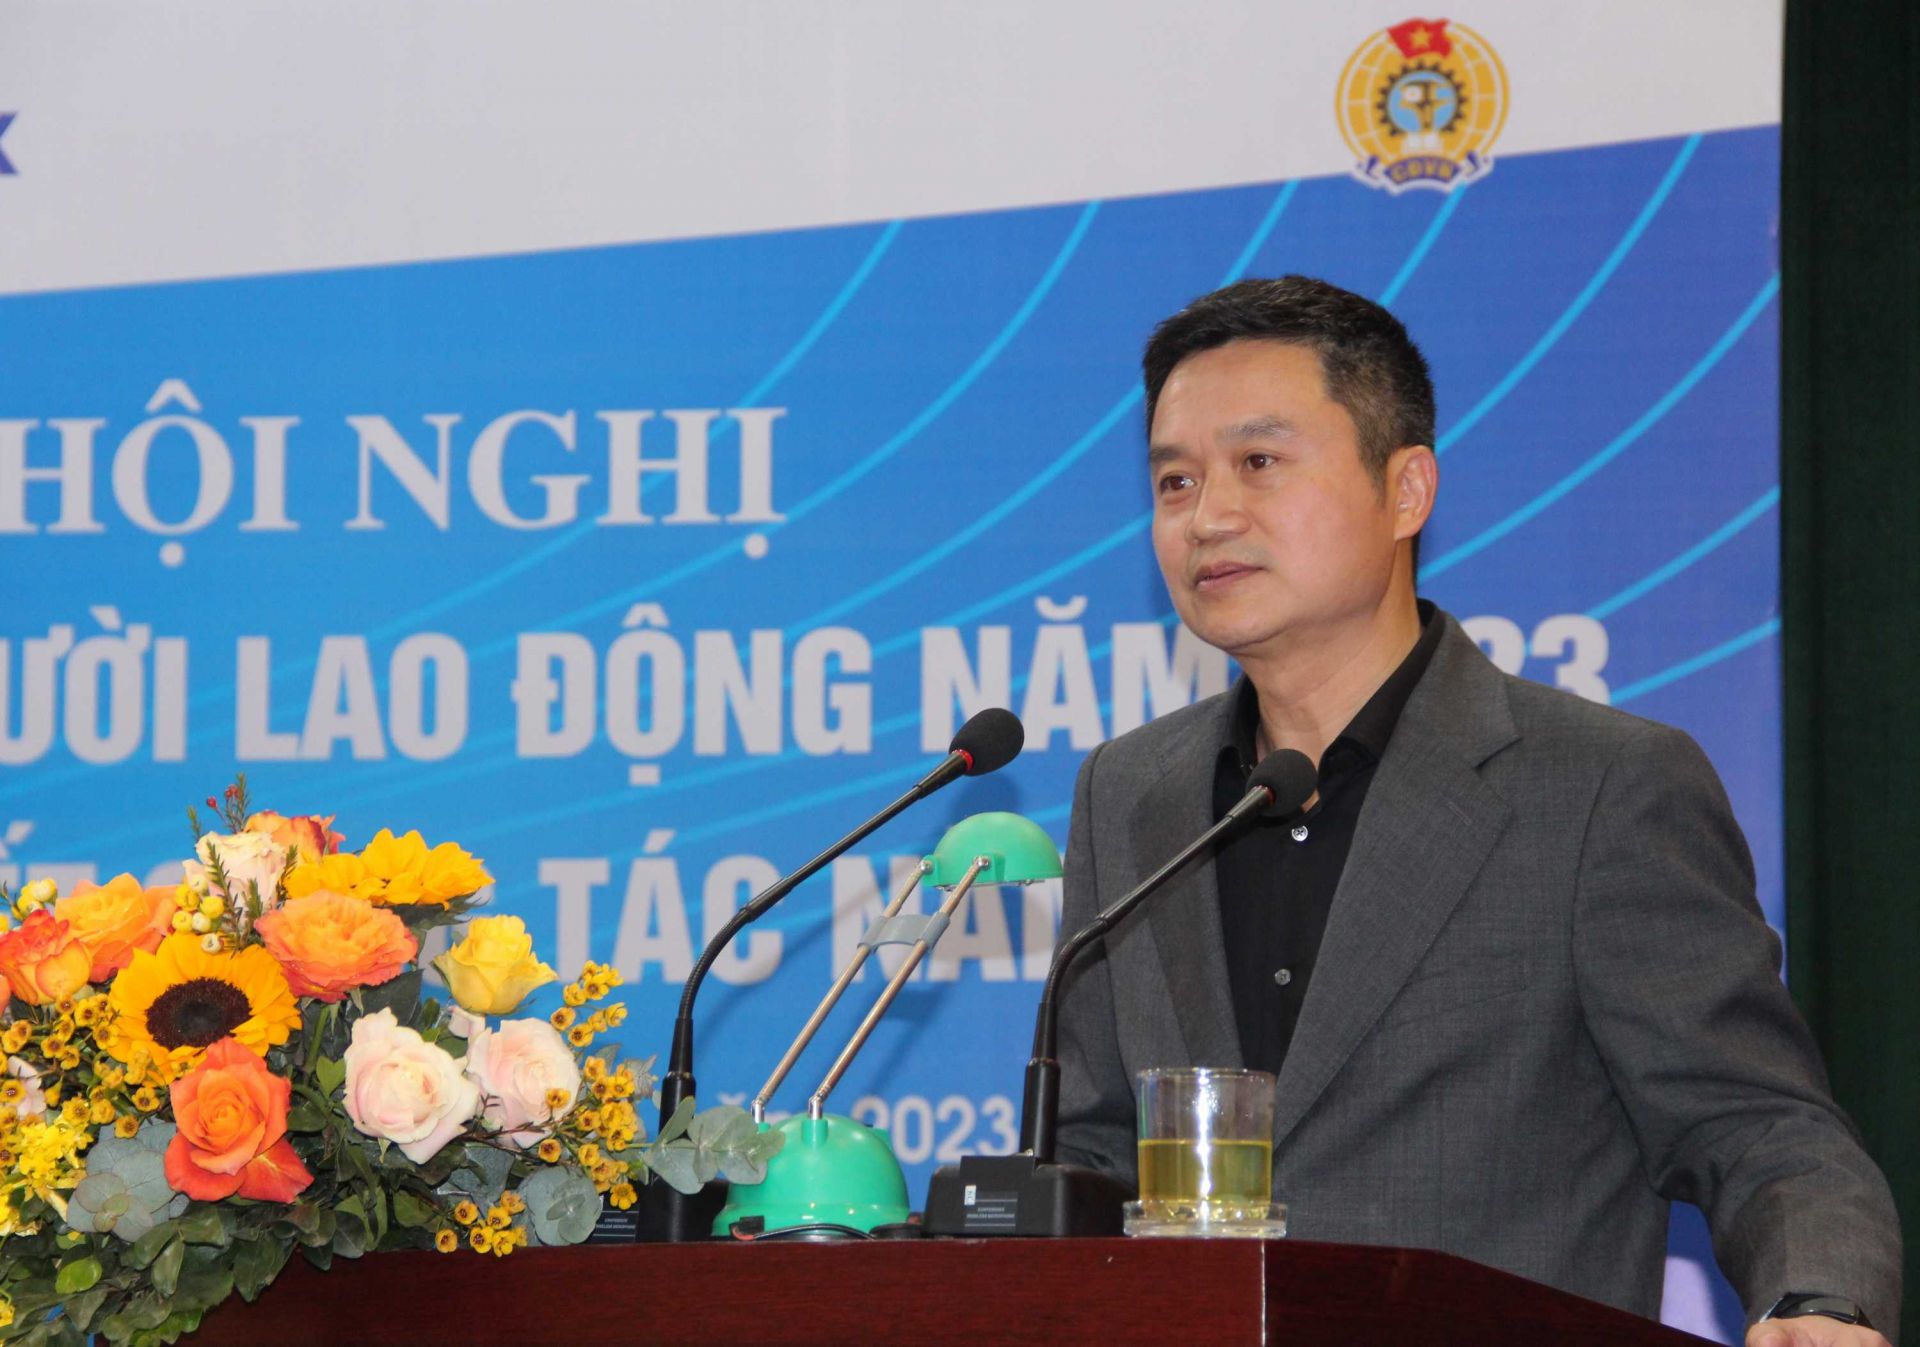 Ông Phạm Văn Thanh - Chủ tịch Hội đồng quản trị Tập đoàn Xăng dầu Việt Nam (Petrolimex)